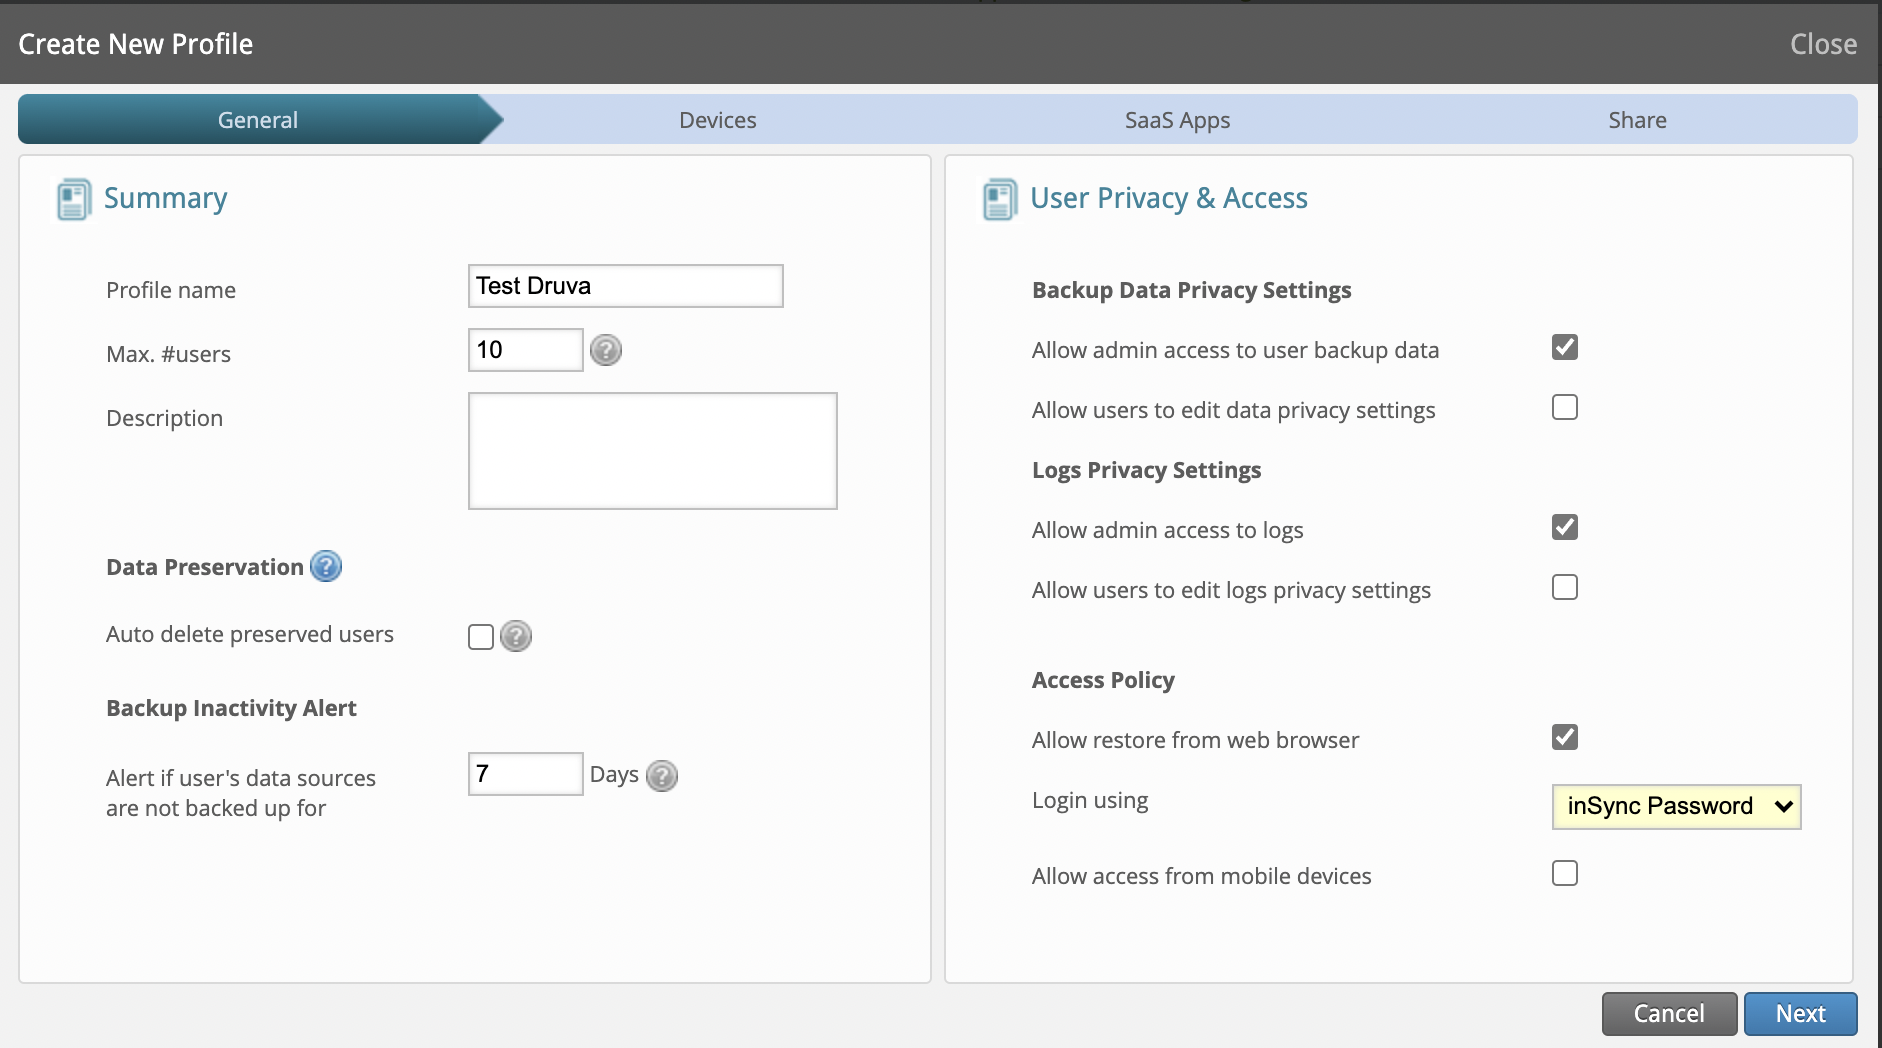 User privacy & access